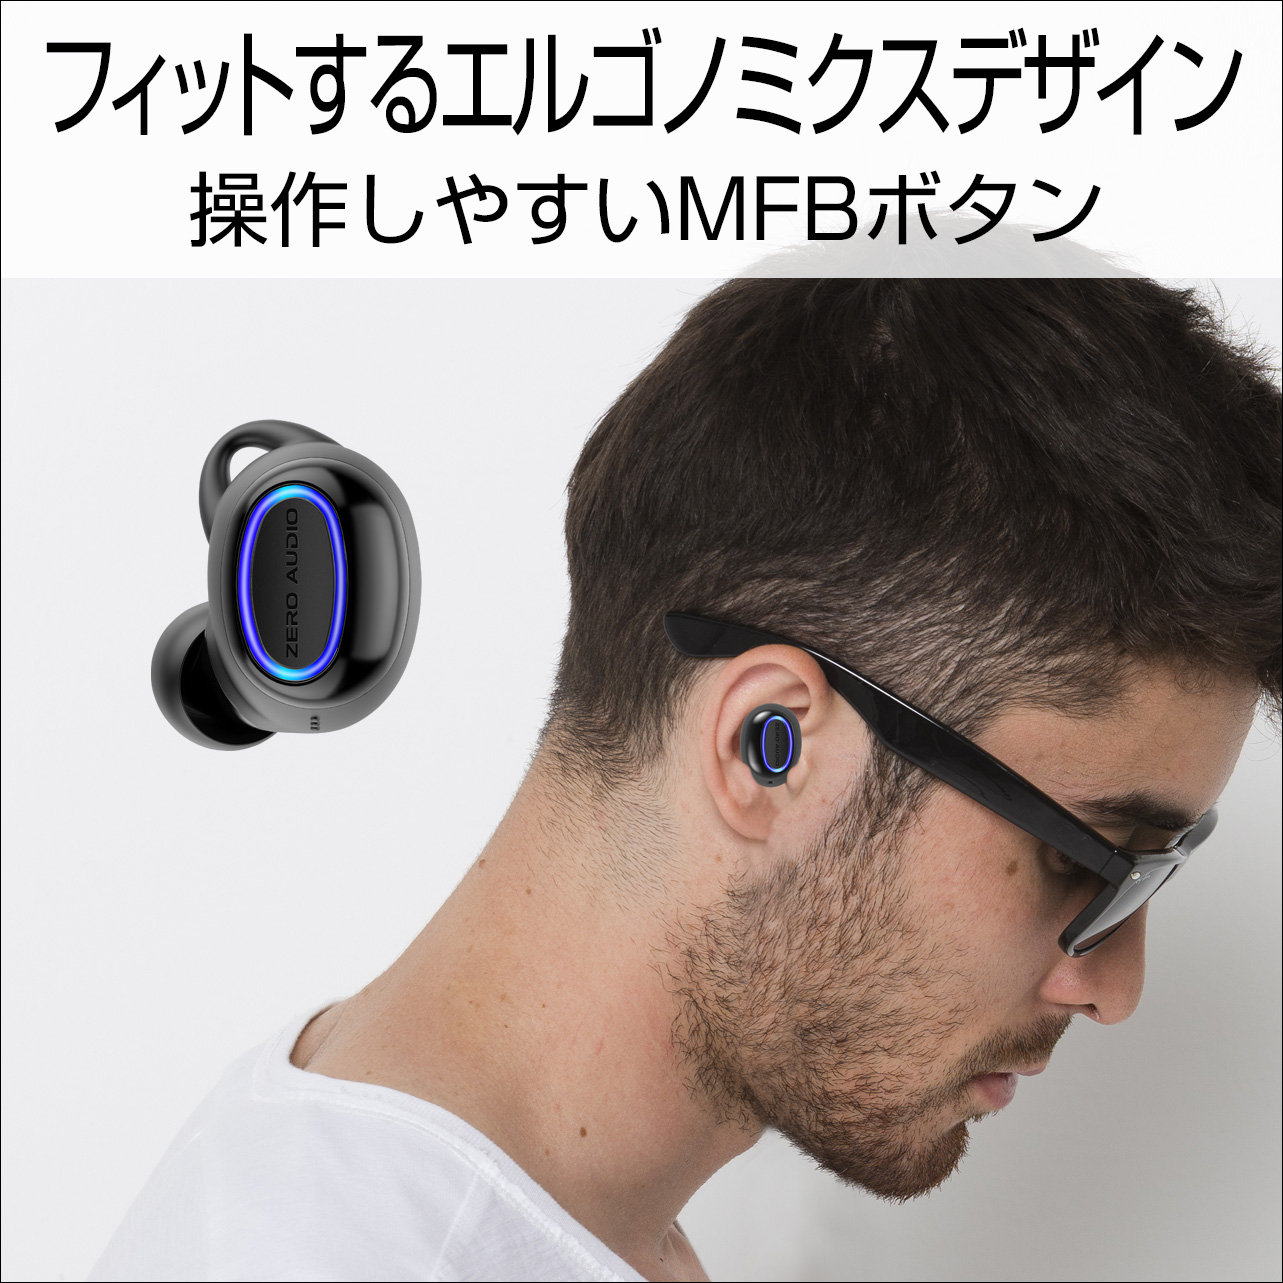 【楽天スーパーセール】 Apple AirPods Pro ＋ZERO audio TWZ1000セット イヤフォン